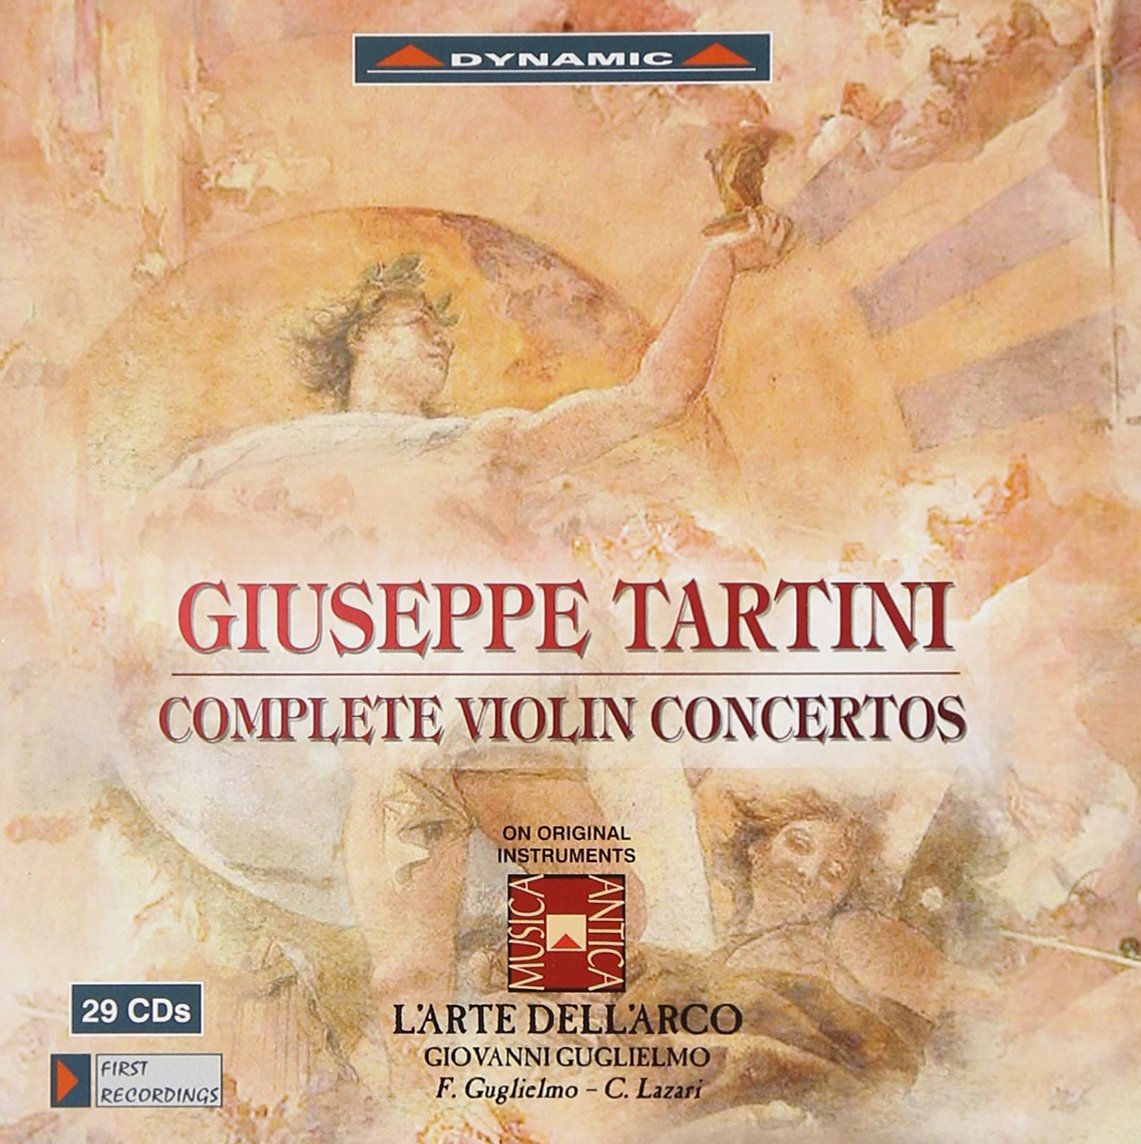 Tartini: Complete Violin Concertos | Federico Guglielmo, Carlo Lazari, L\'Arte dell\'Arco, Giovanni Guglielmo, Giuseppe Tartini